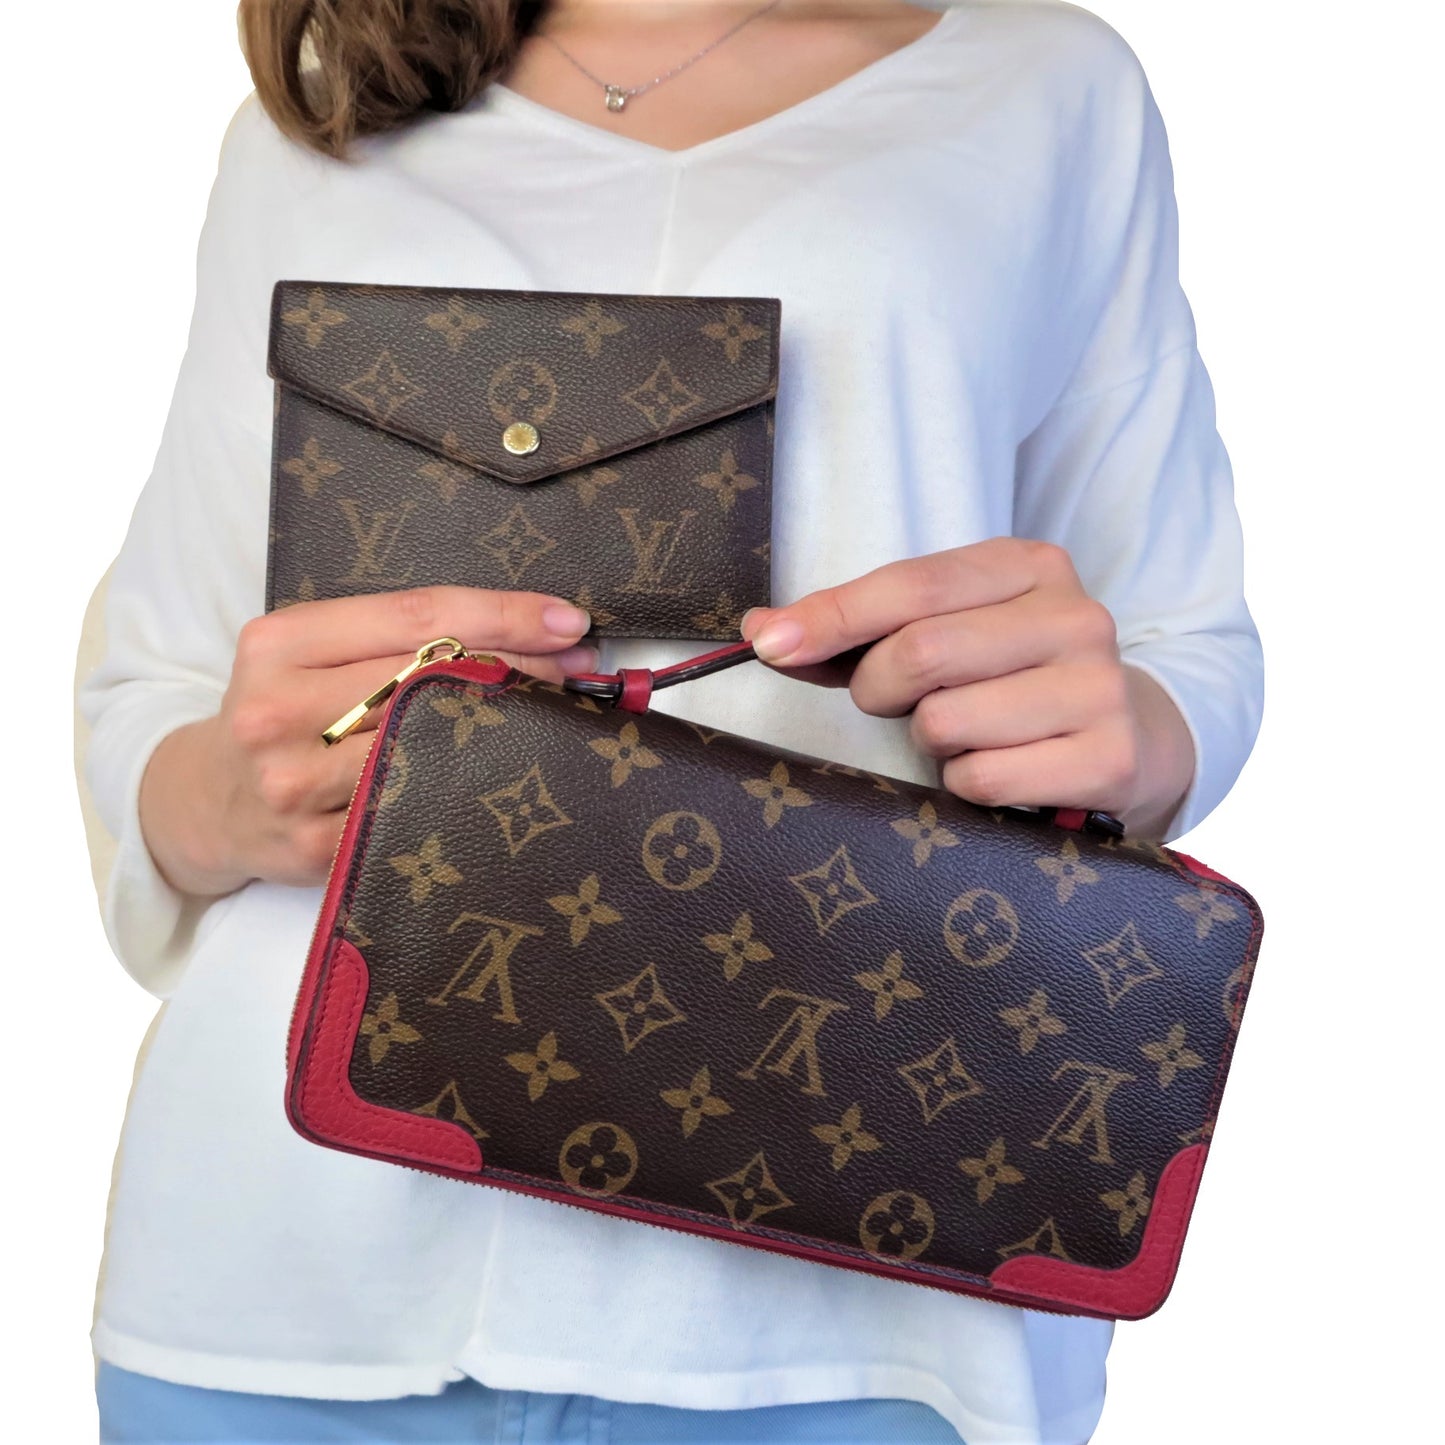 Louis Vuitton, Bags, Lv Daily Organizer